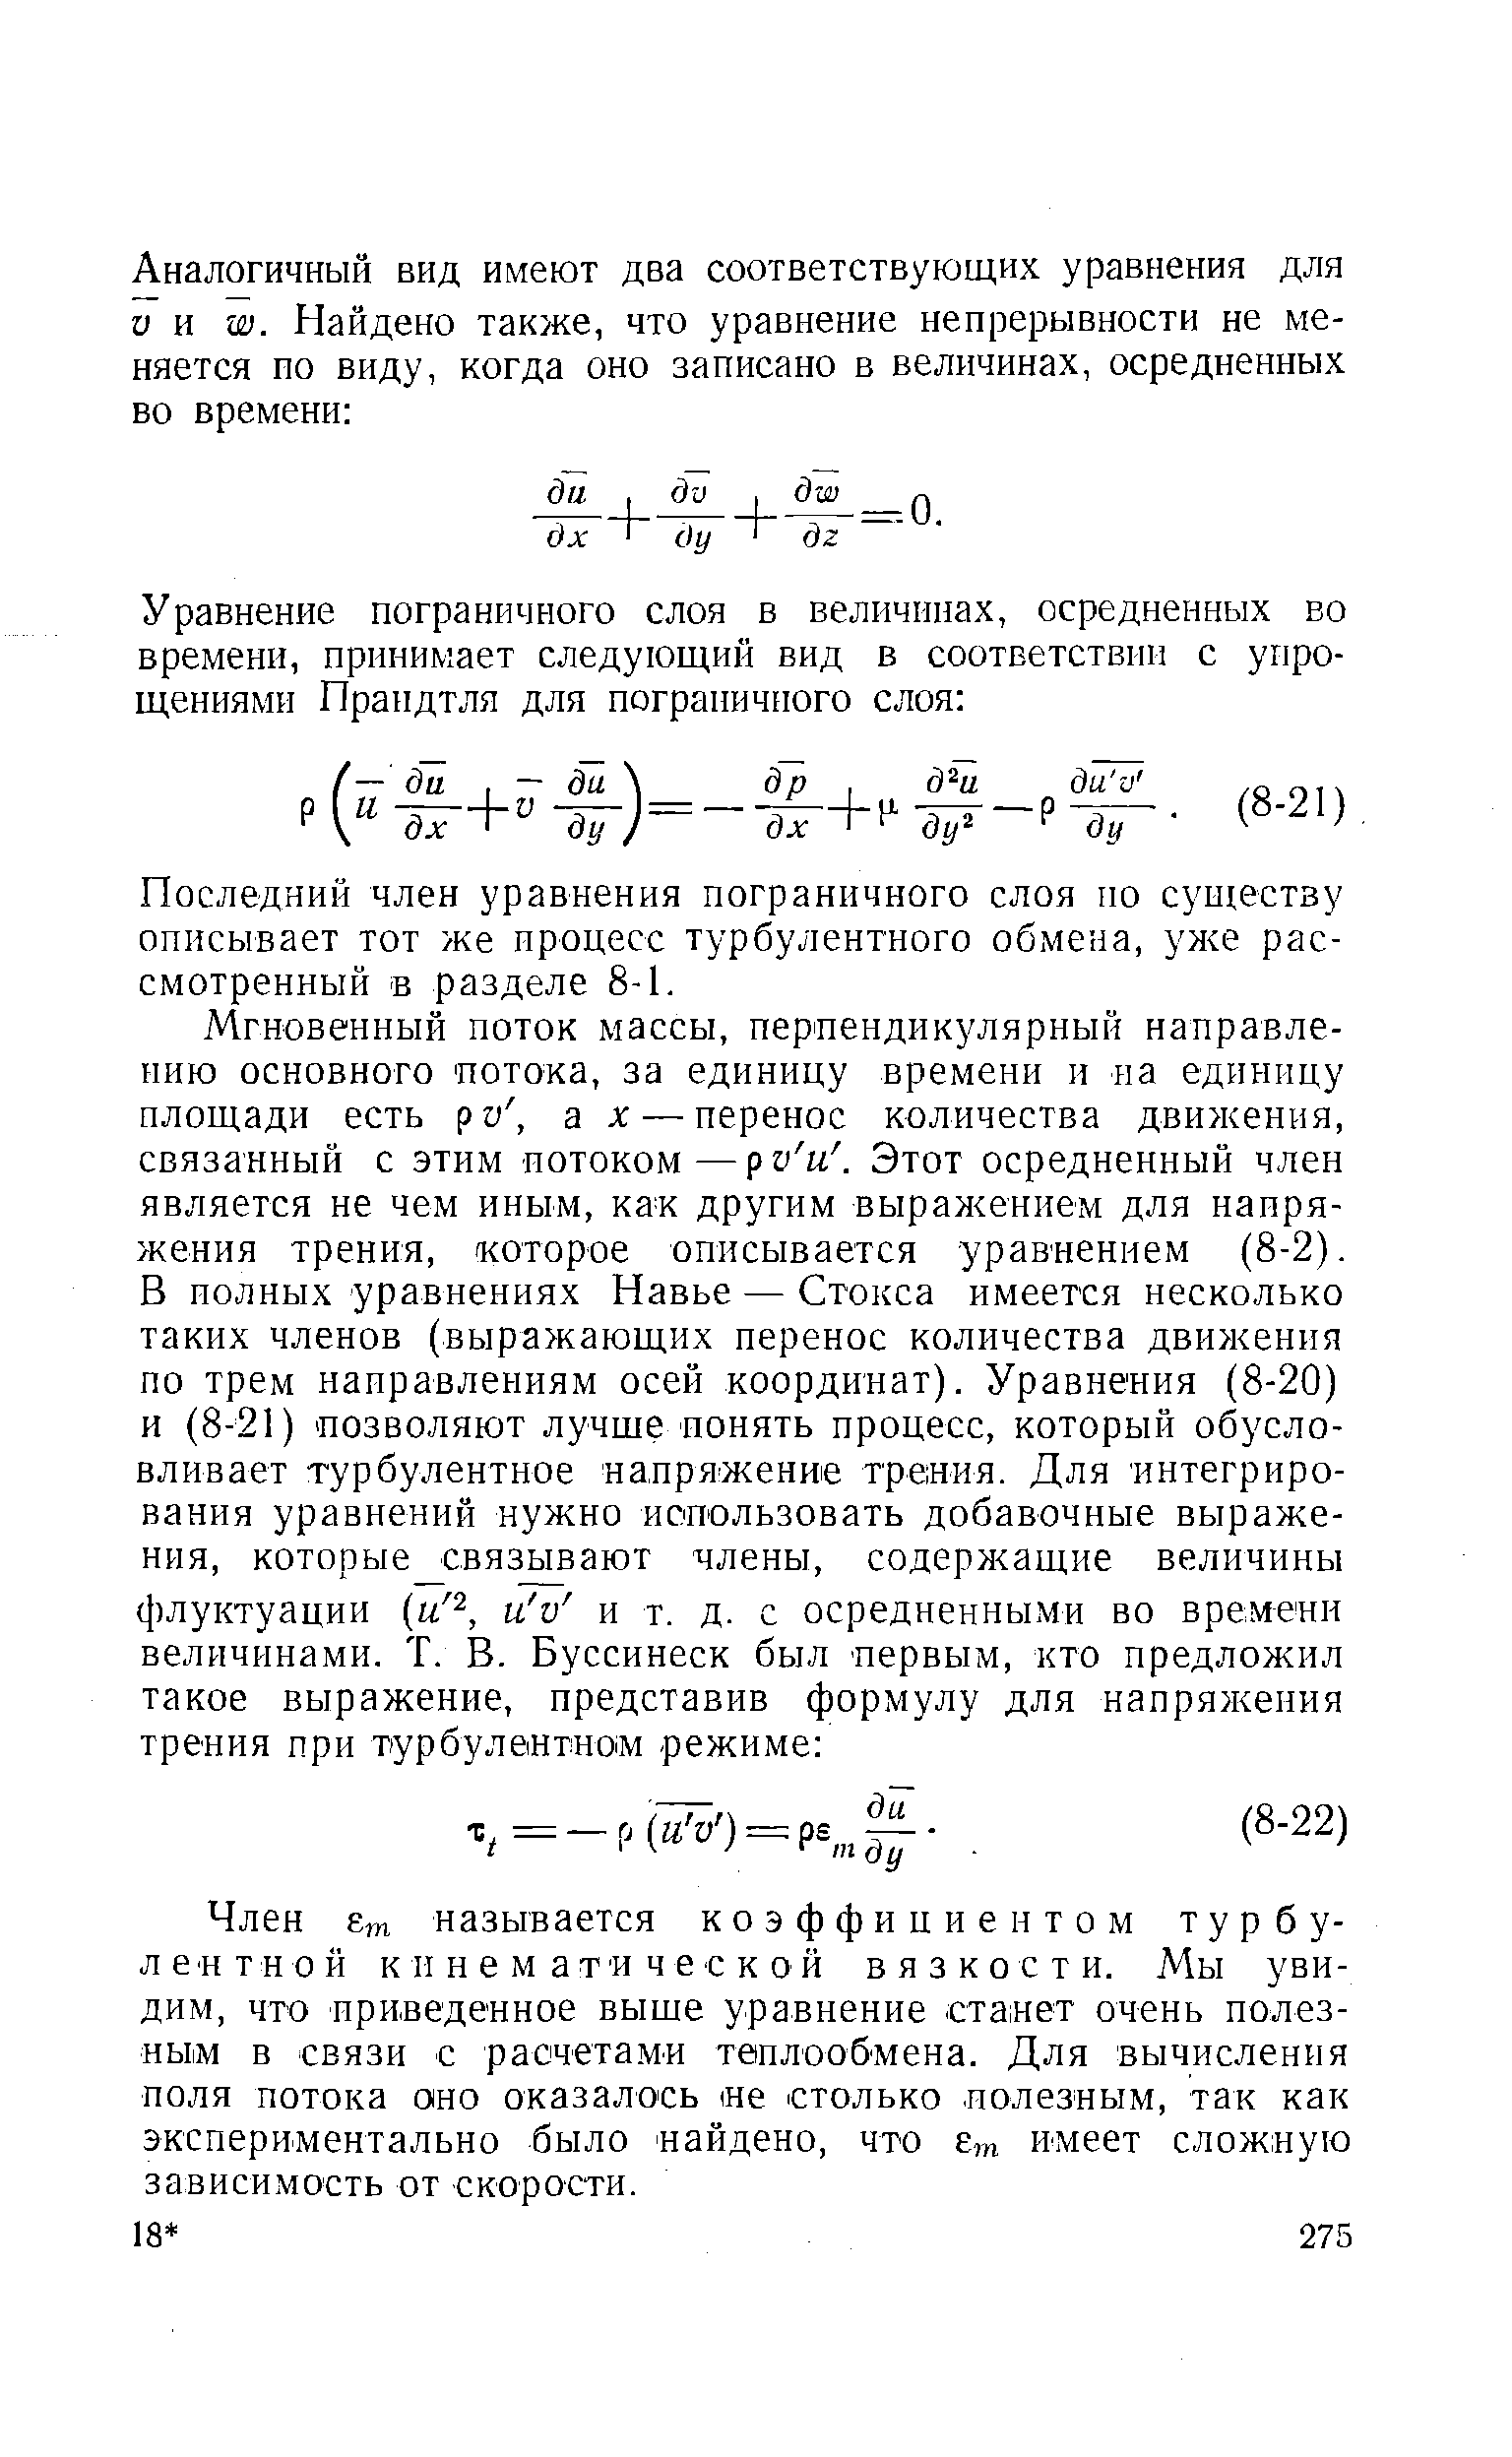 Последний член уравнения пограничного слоя по суи1естзу описывает тот же процесс турбулентного обмена, ул е рассмотренный в разделе 8-1.